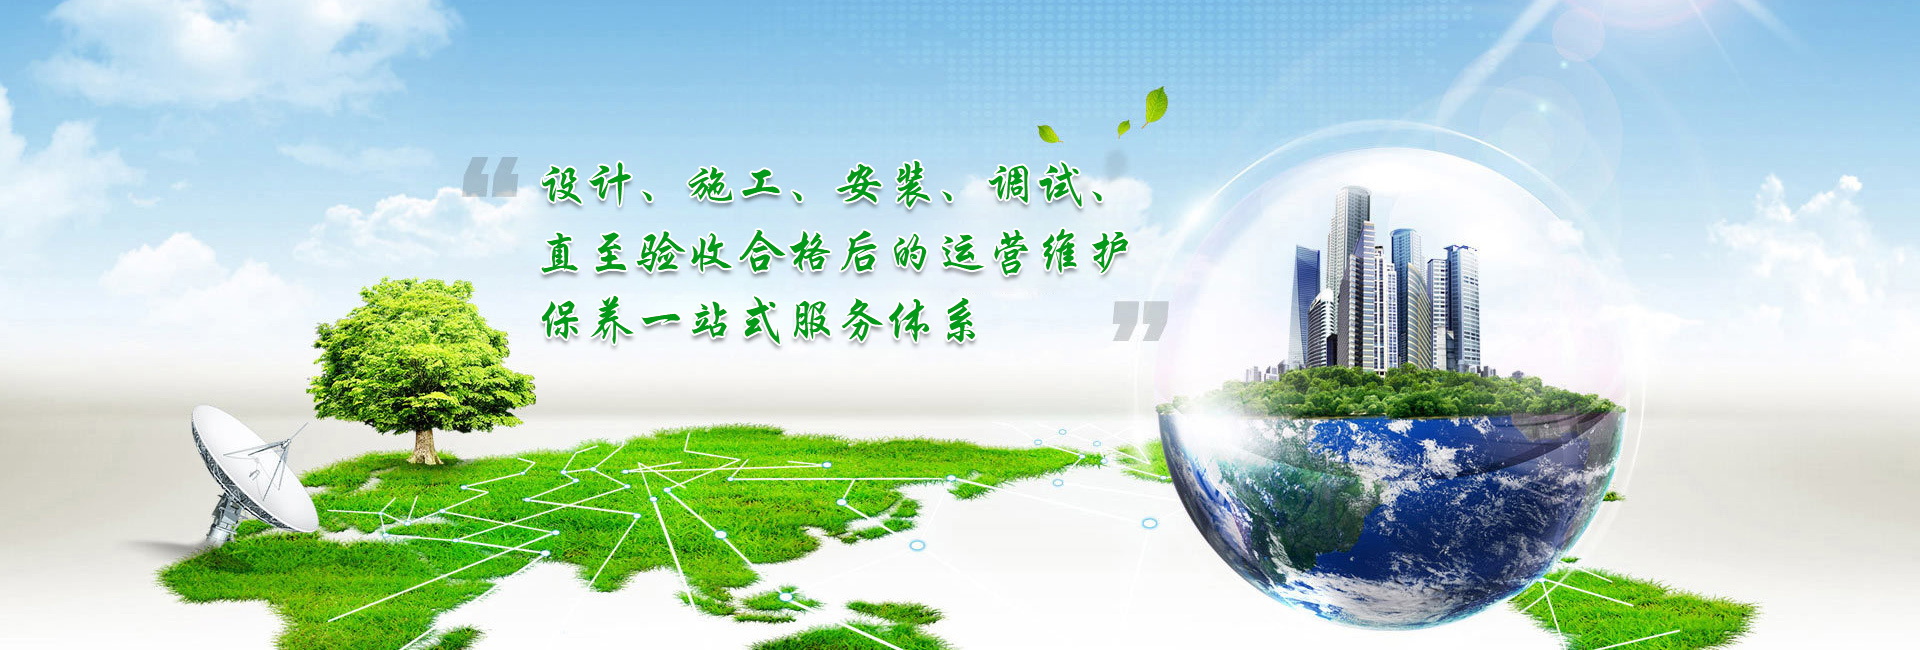 bwin·必赢(中国)唯一官方网站_image6166